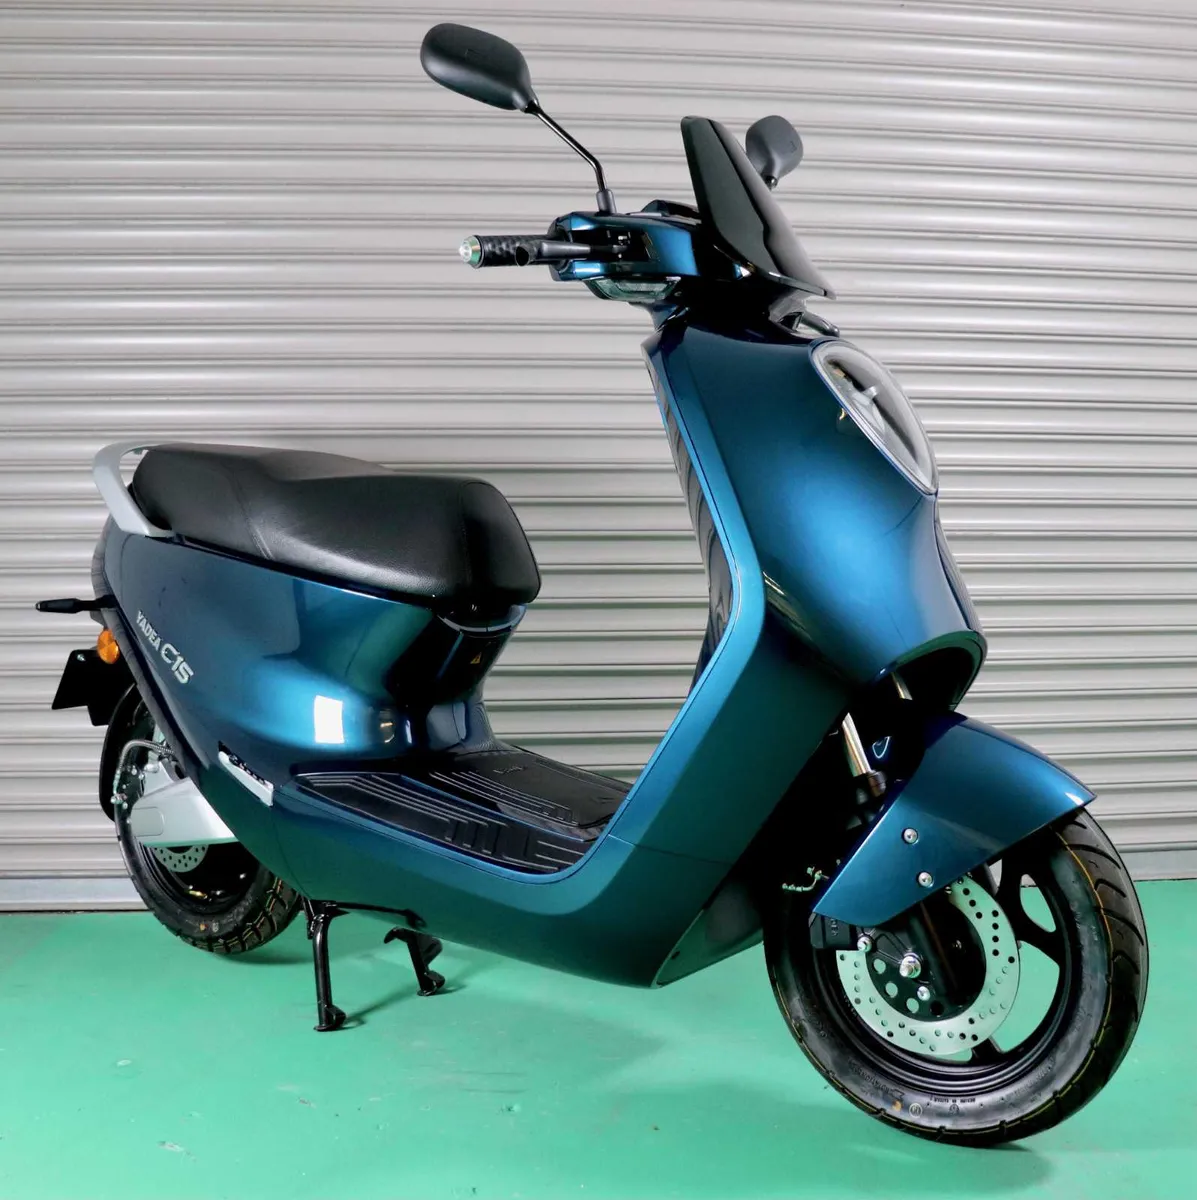 YADEA C1S Premium Electric Scooter!